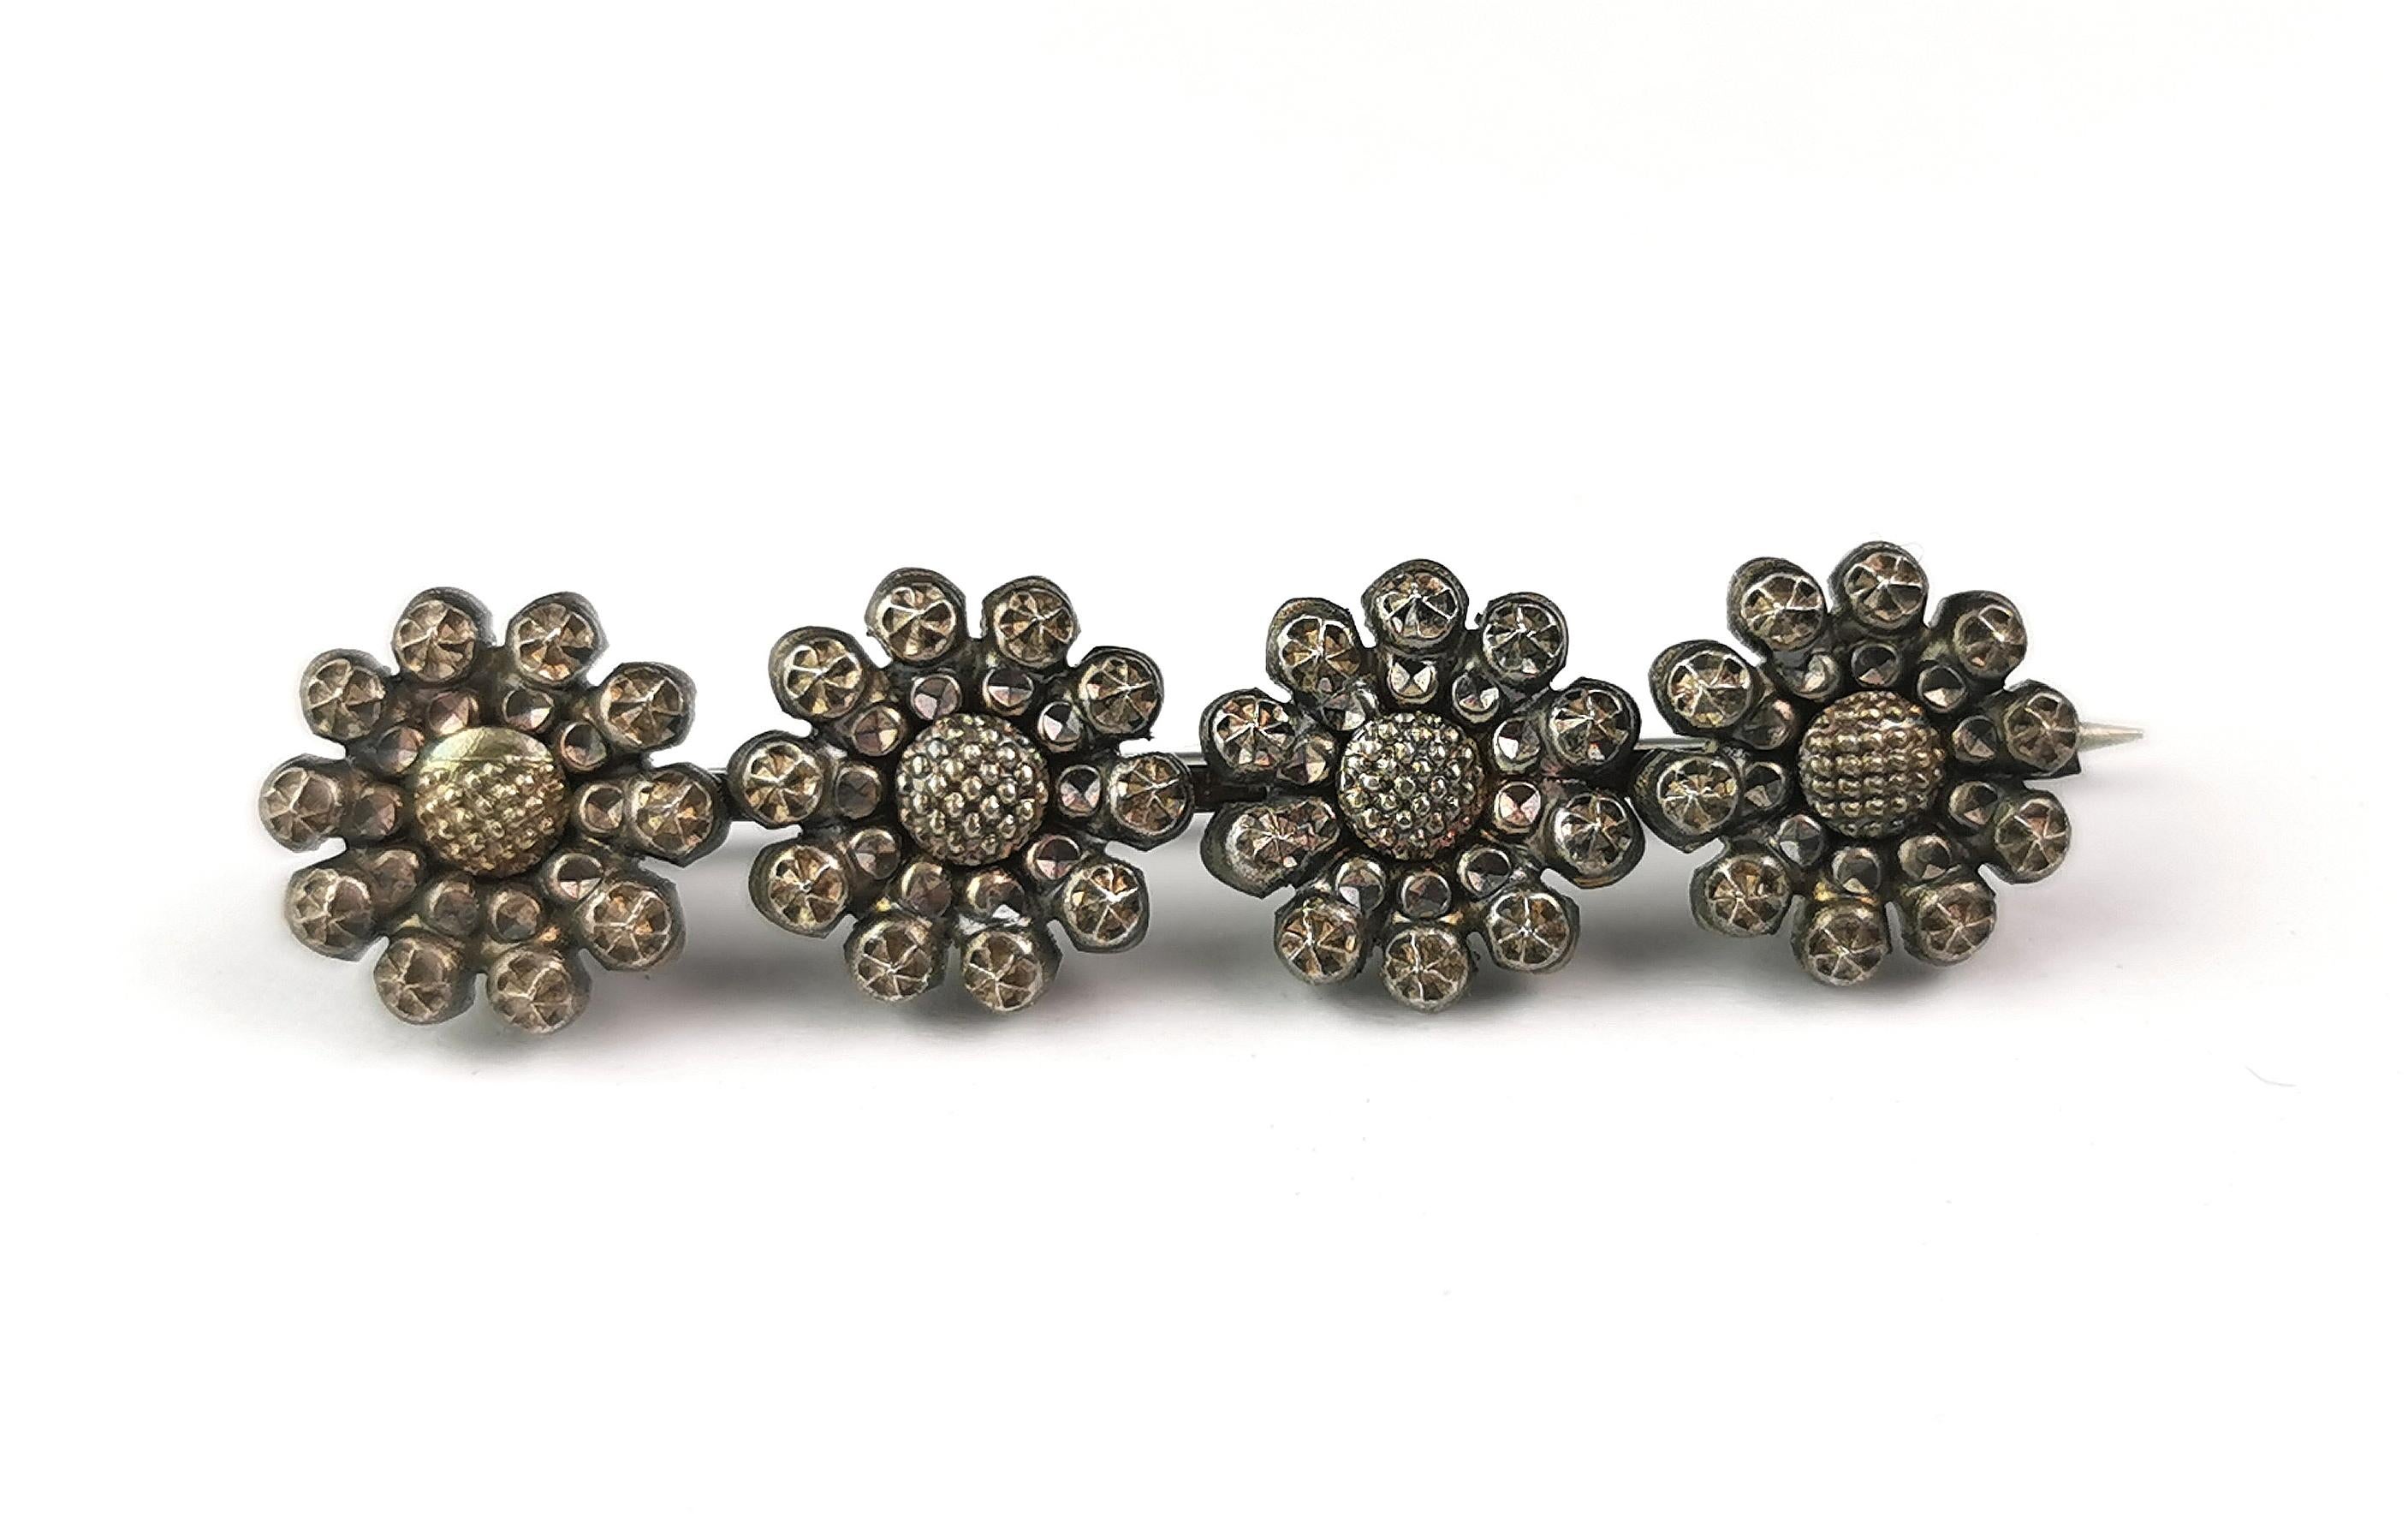 Une jolie broche fleur en acier découpé, ancienne, du début de l'ère victorienne.

Il s'agit d'une broche de style bar et peut être utilisée comme épingle de cravate ou de cravate. Elle présente une rangée de quatre fleurs individuelles en acier